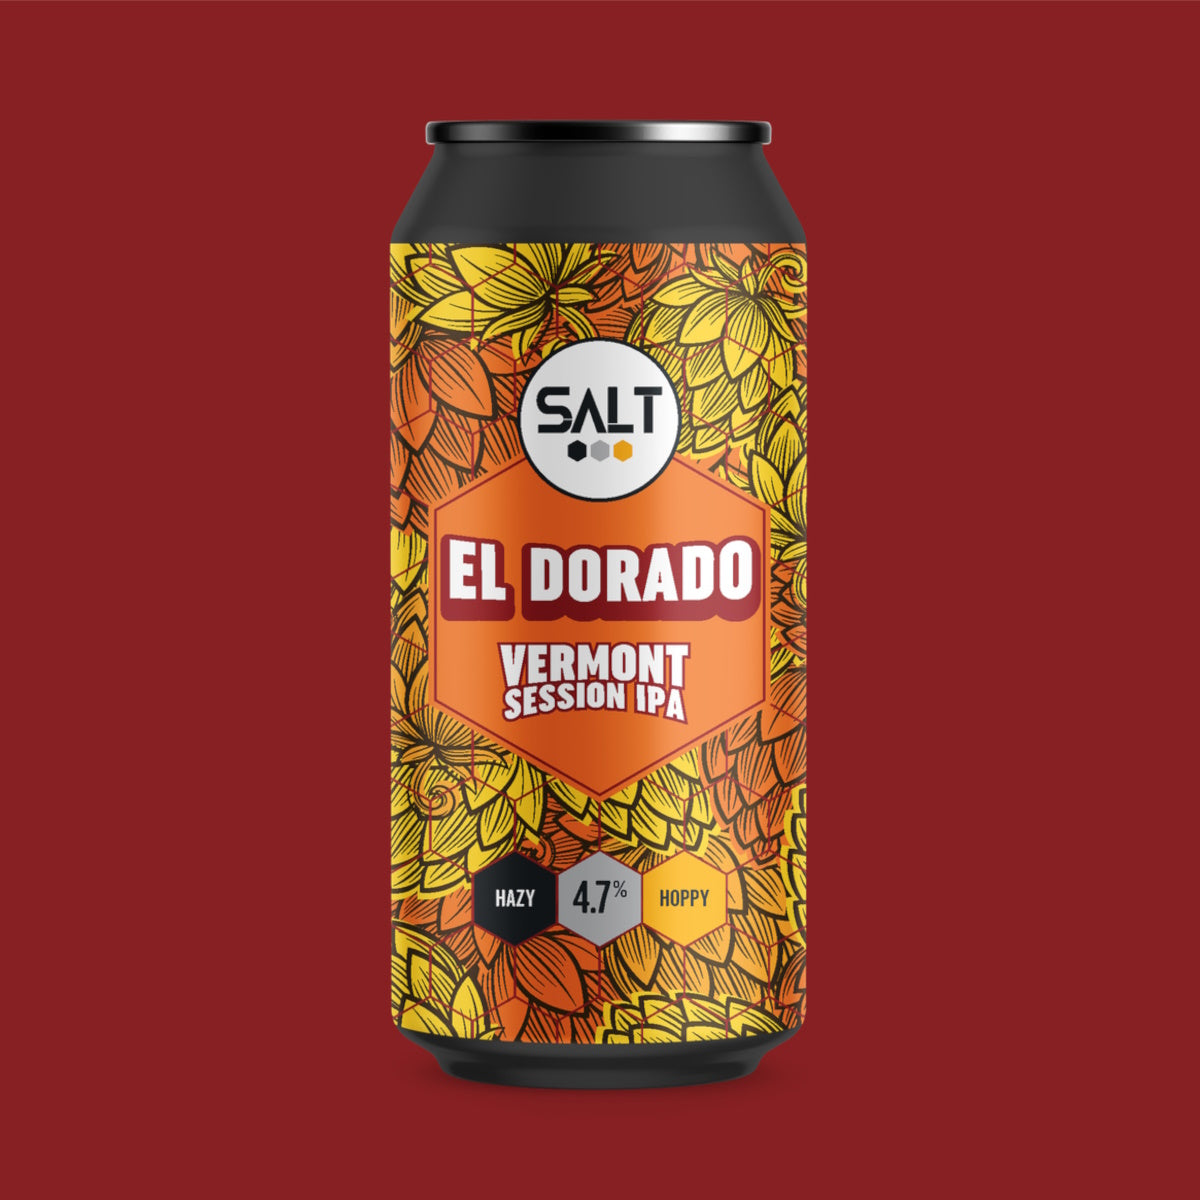 EL DORADO 4.7% VERMONT SESSION IPA